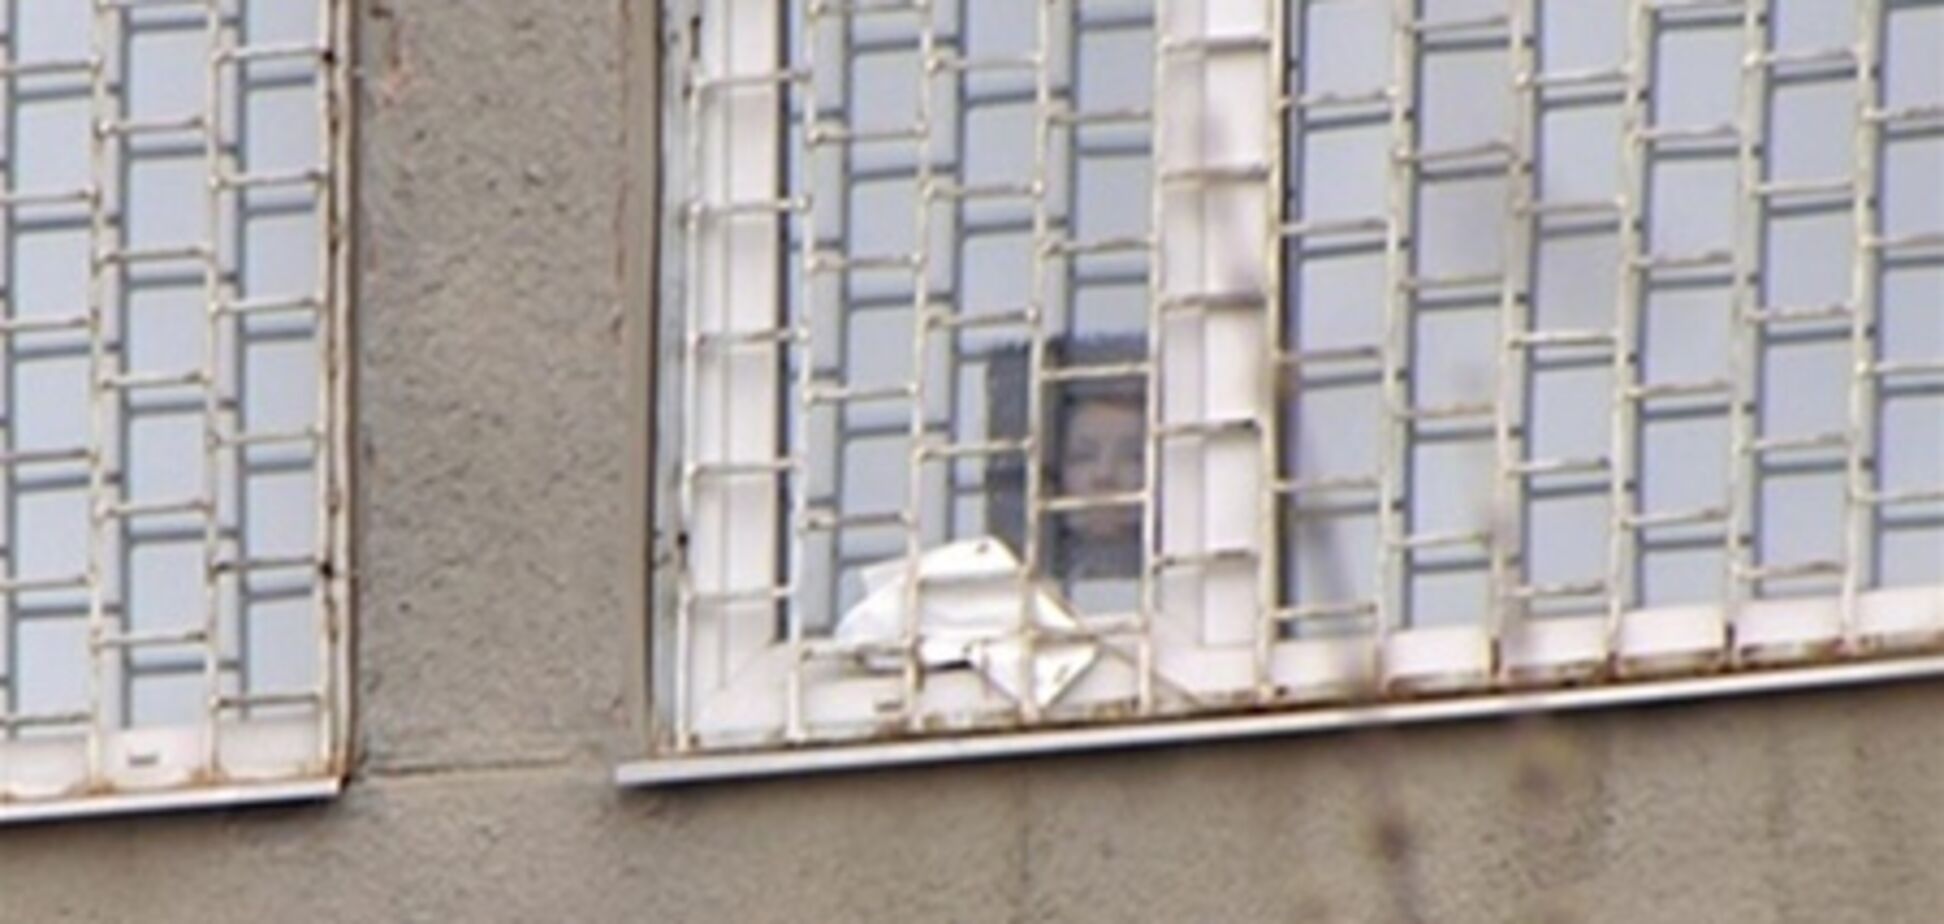 Тимошенко показалась сторонникам из окна. Фото